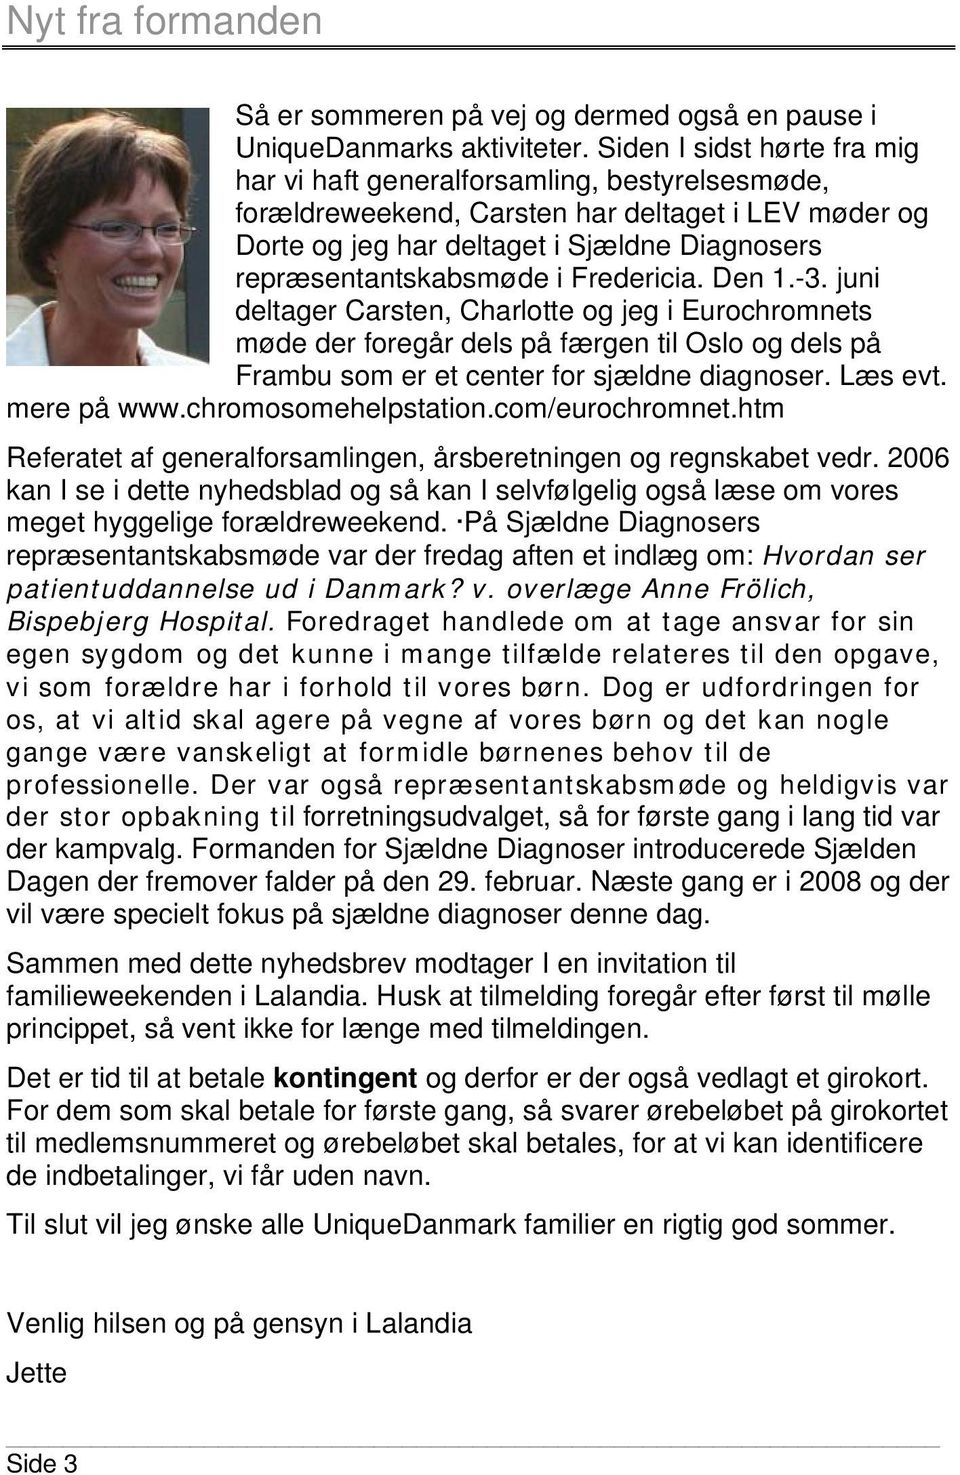 Fredericia. Den 1.-3. juni deltager Carsten, Charlotte og jeg i Eurochromnets møde der foregår dels på færgen til Oslo og dels på Frambu som er et center for sjældne diagnoser. Læs evt. mere på www.